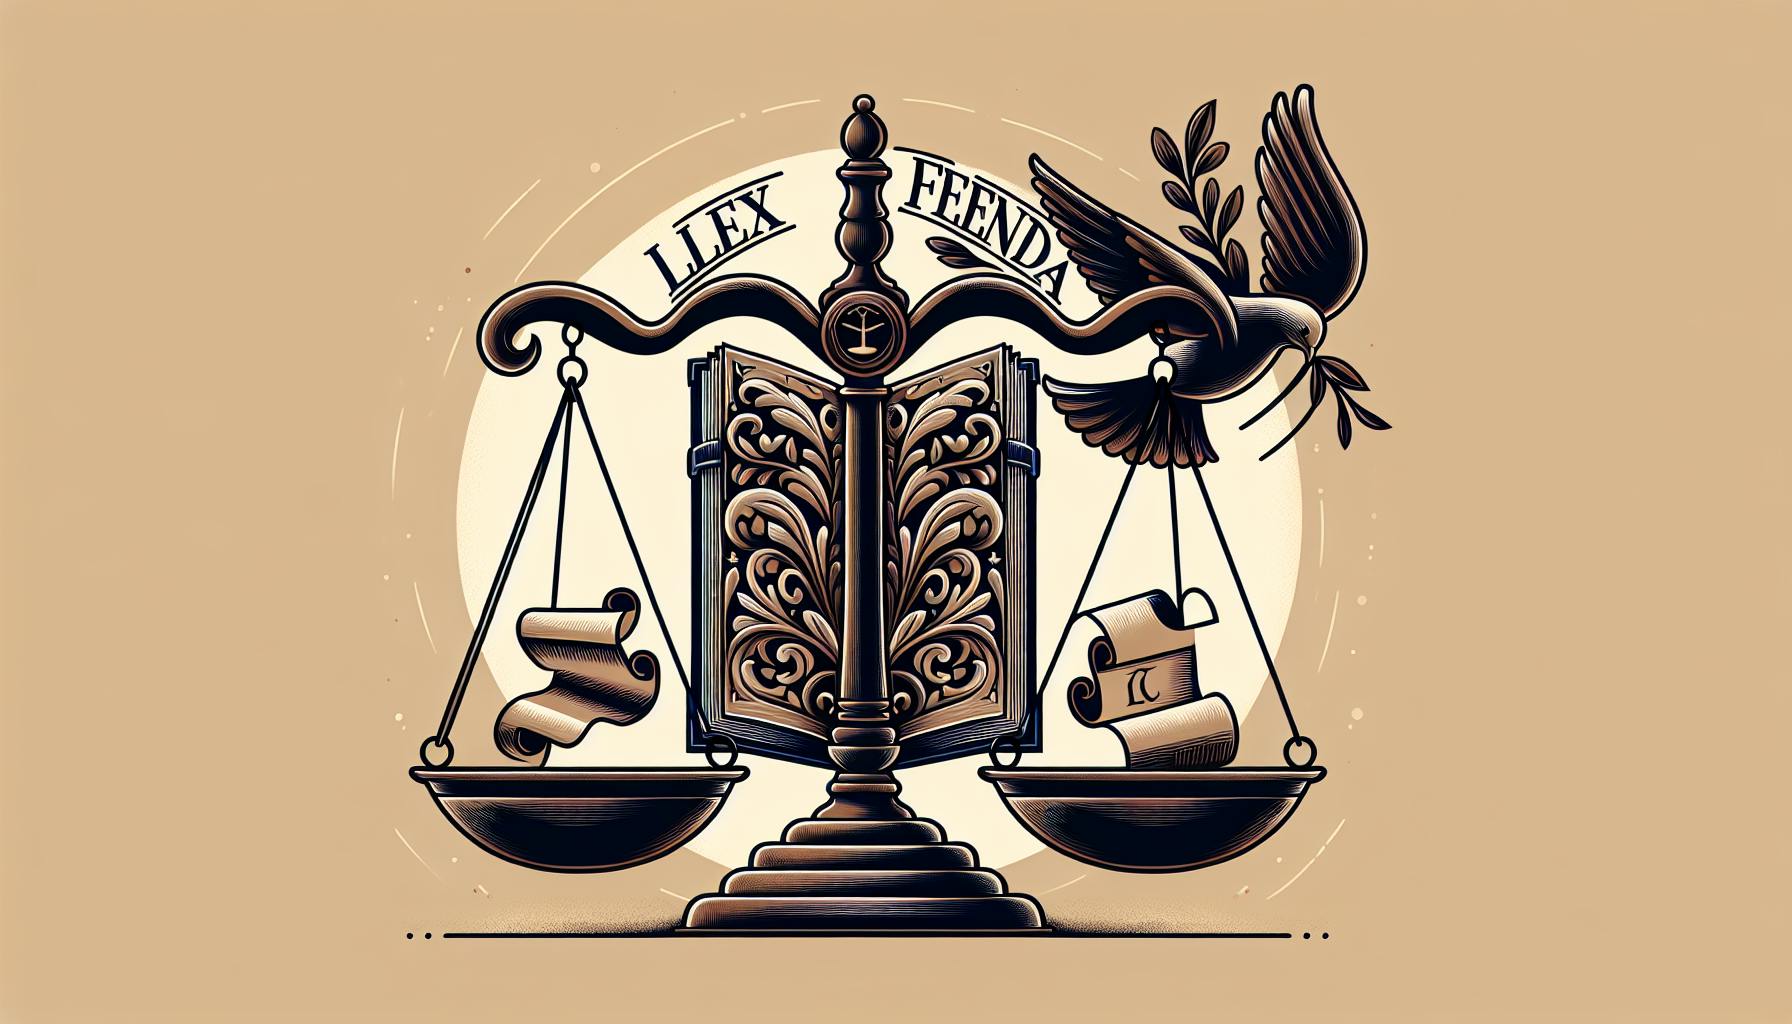 Lex Lata: Legal Concept Explained